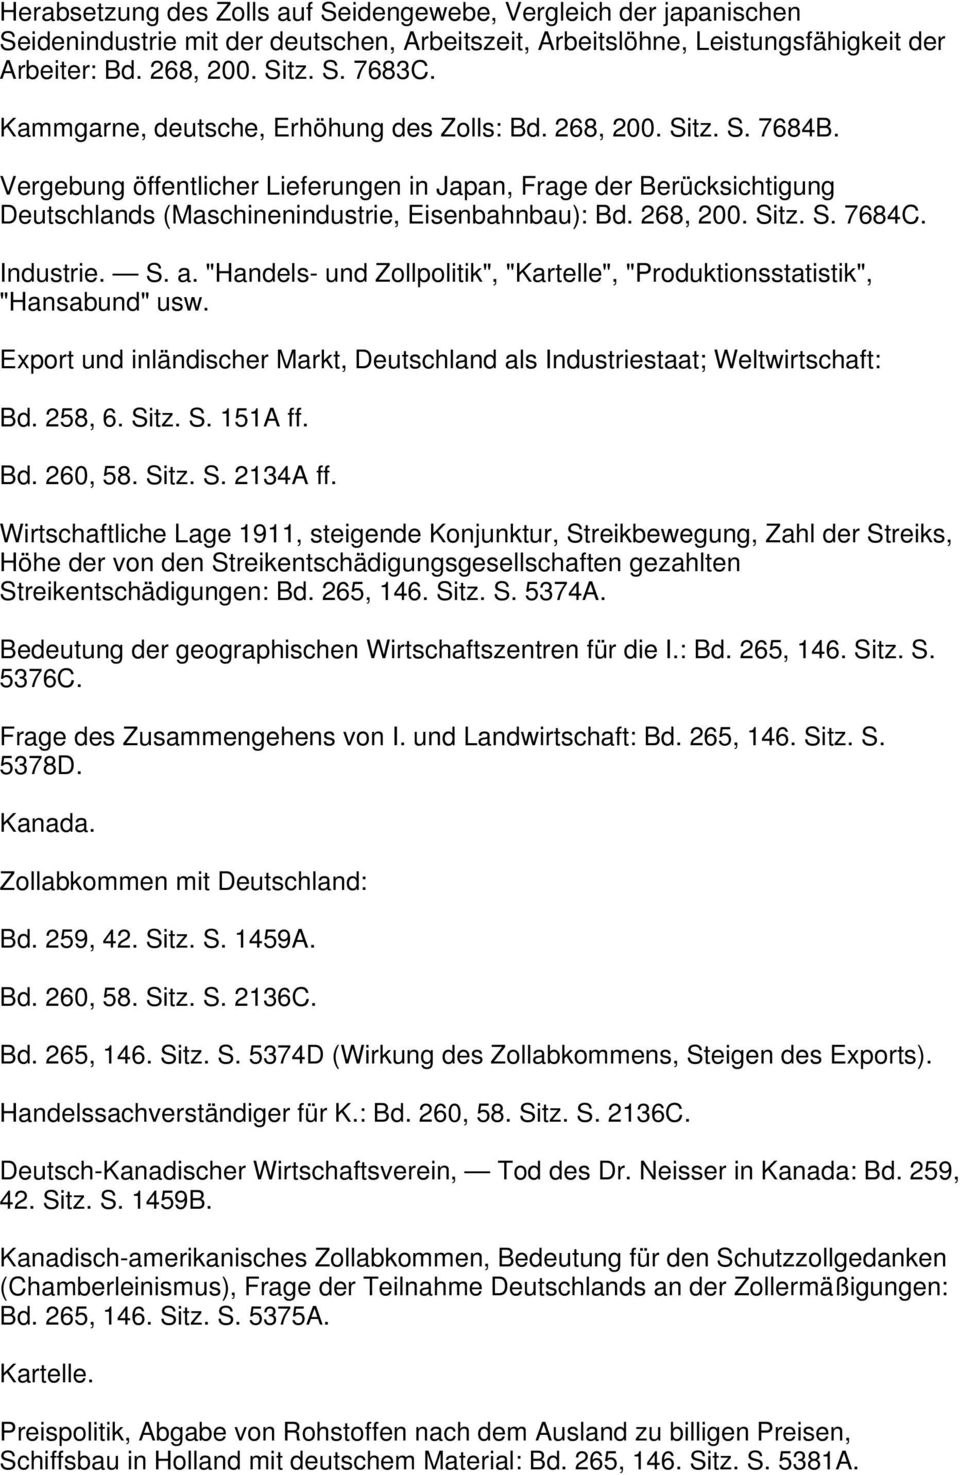 268, 200. Sitz. S. 7684C. Industrie. S. a. "Handels- und Zollpolitik", "Kartelle", "Produktionsstatistik", "Hansabund" usw.